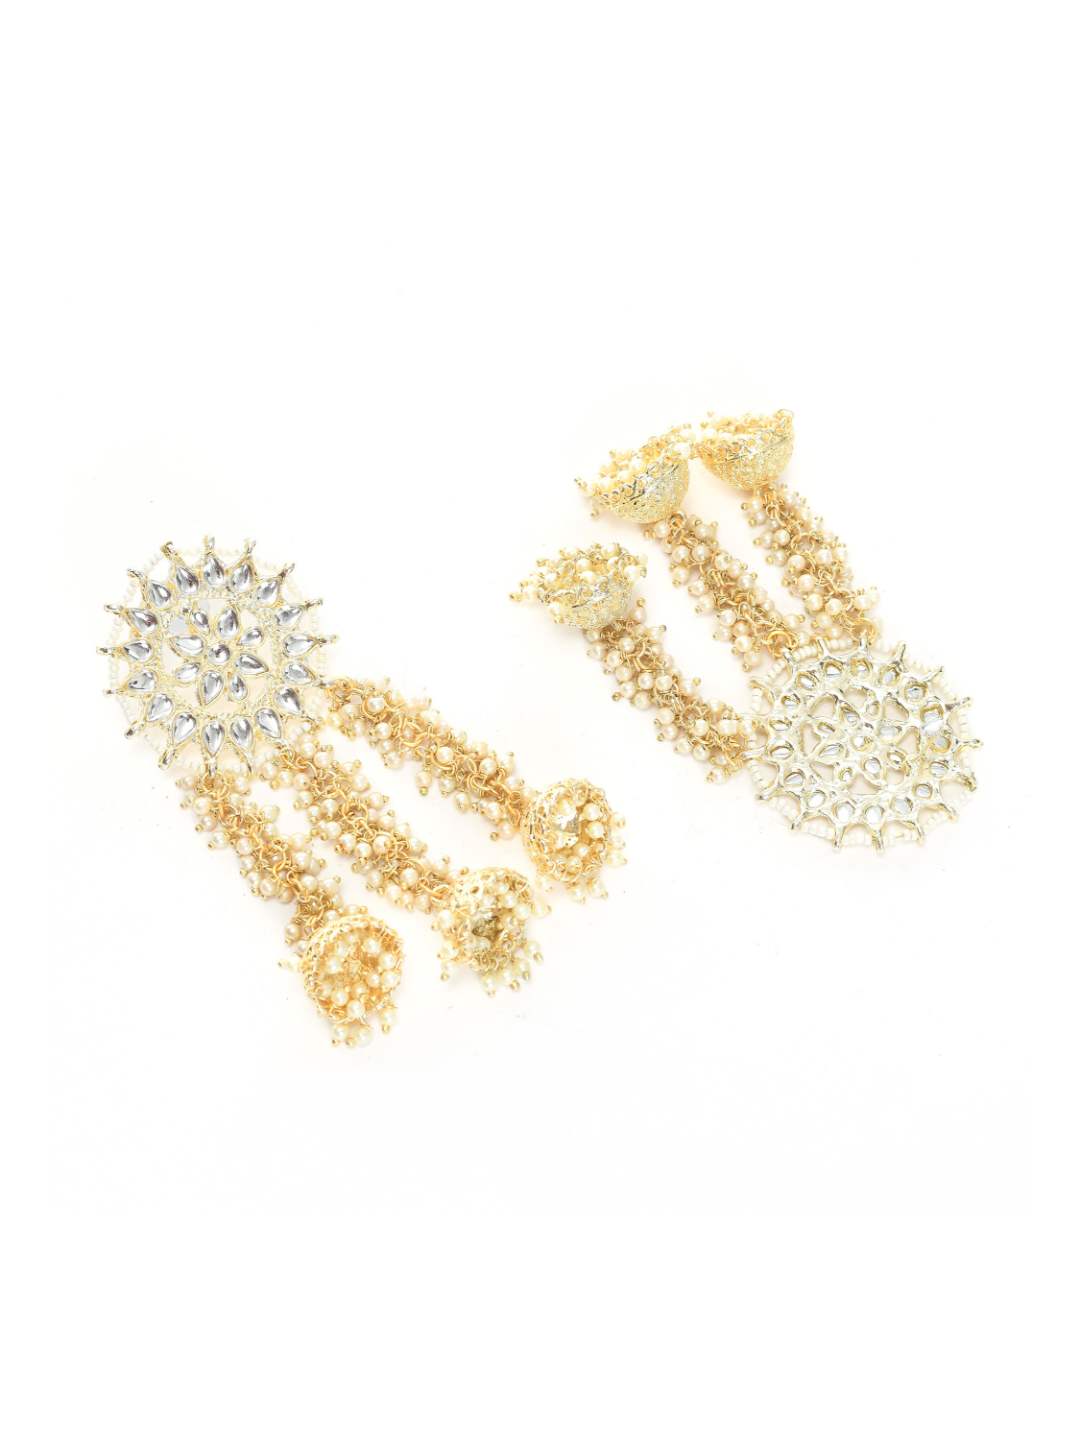 Johar Kamal Golden Plated Earrings with Kundan & Pearls Jker_152